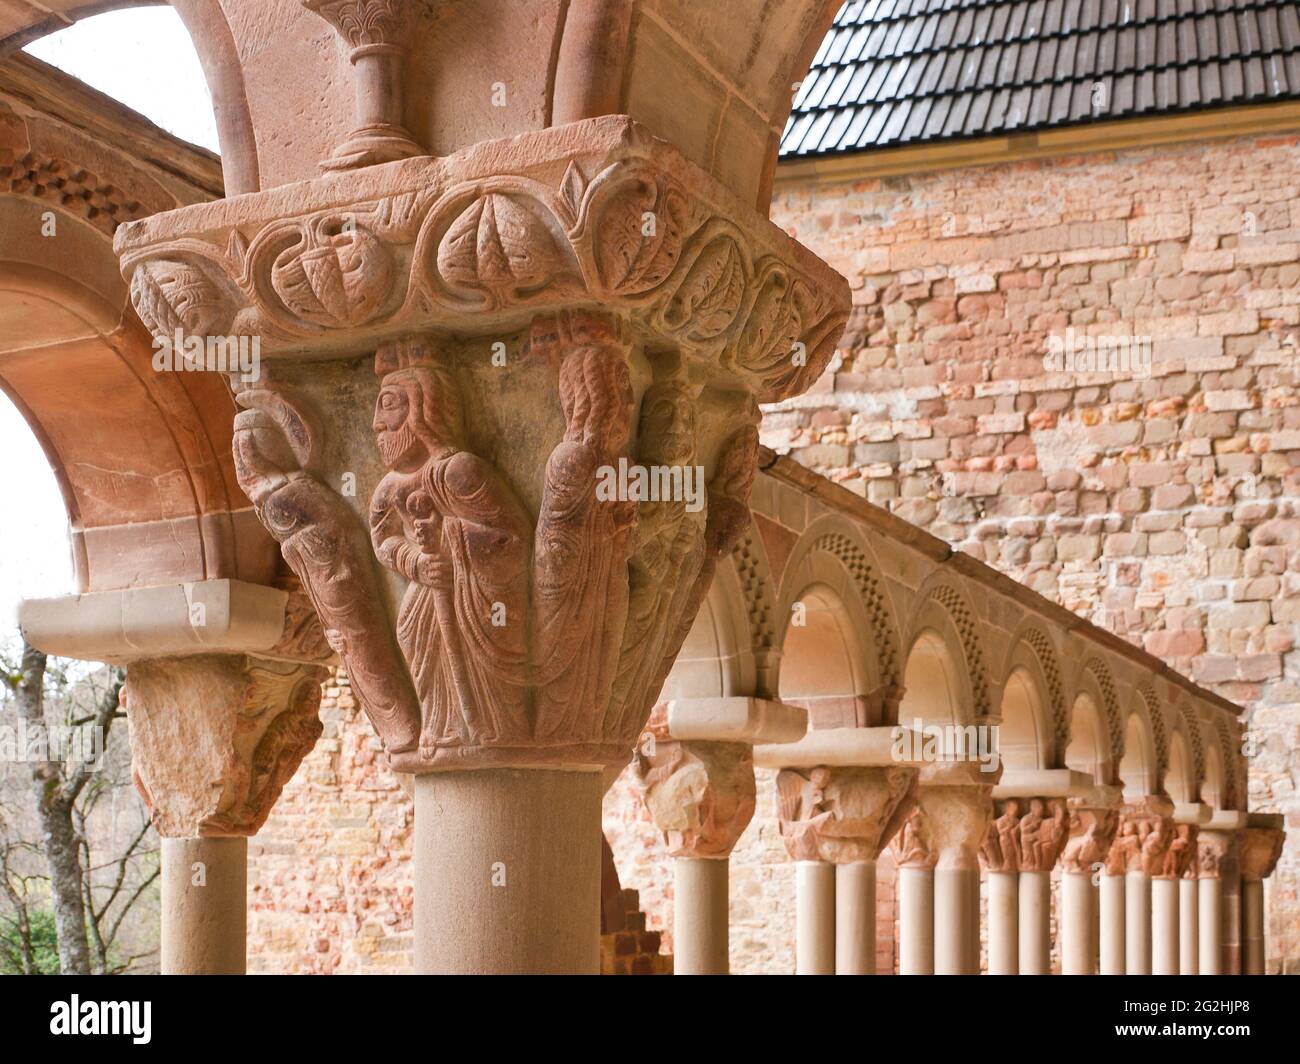 El monasterio de San Juan de la Pena está situado al suroeste de Jaca, en Huesca, España, Fue uno de los monasterios más importantes de Aragón en la Edad Media, su iglesia de dos niveles está parcialmente tallada en la piedra del gran acantilado que sobresale Foto de stock